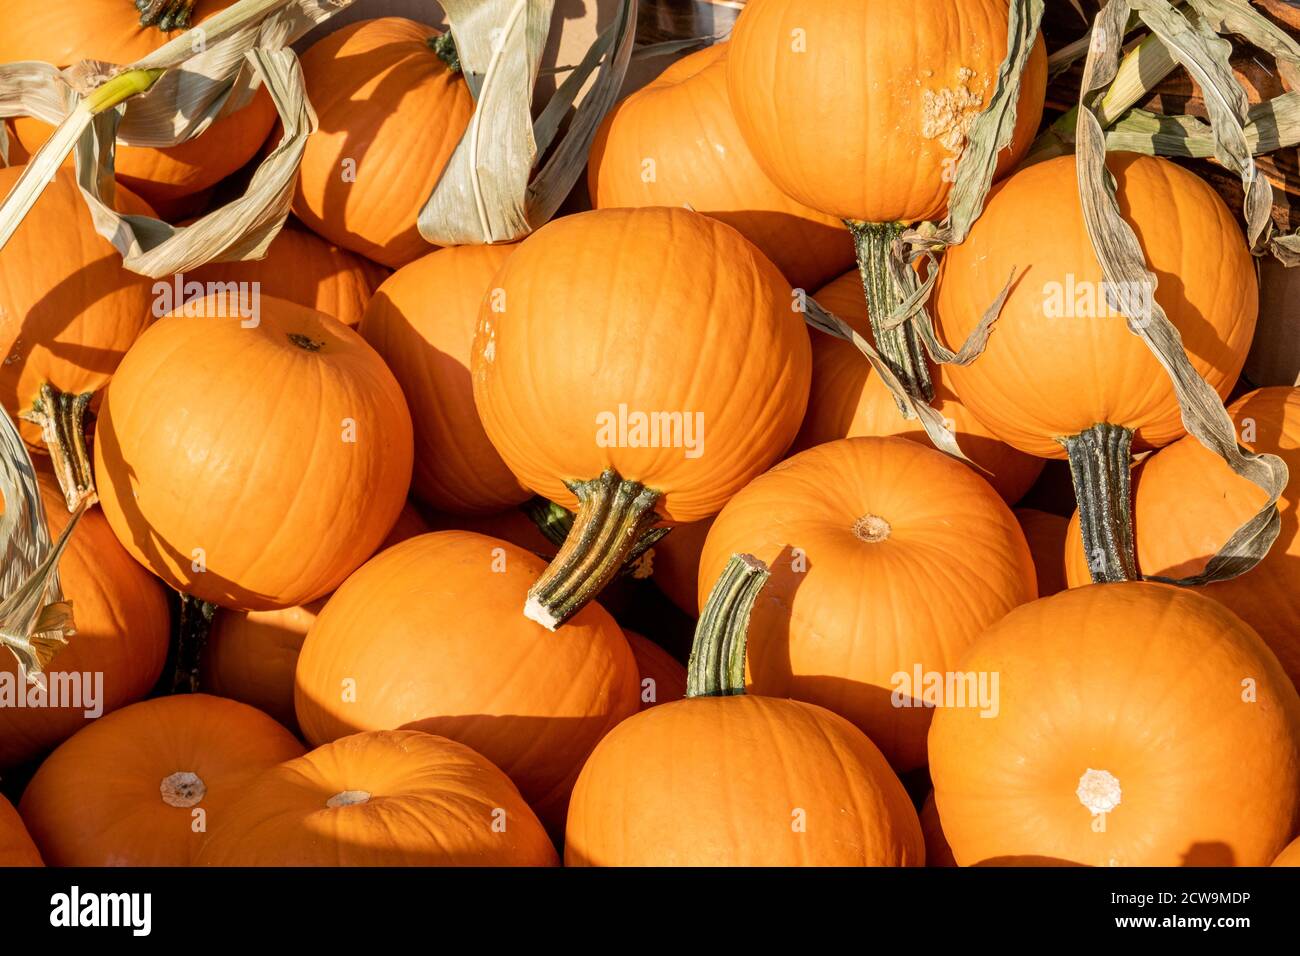 Una panoramica completa di una piccola zucca arancione in un'esposizione autunnale, pronta per la vendita prima del Ringraziamento e delle vacanze di Halloween. Foto Stock